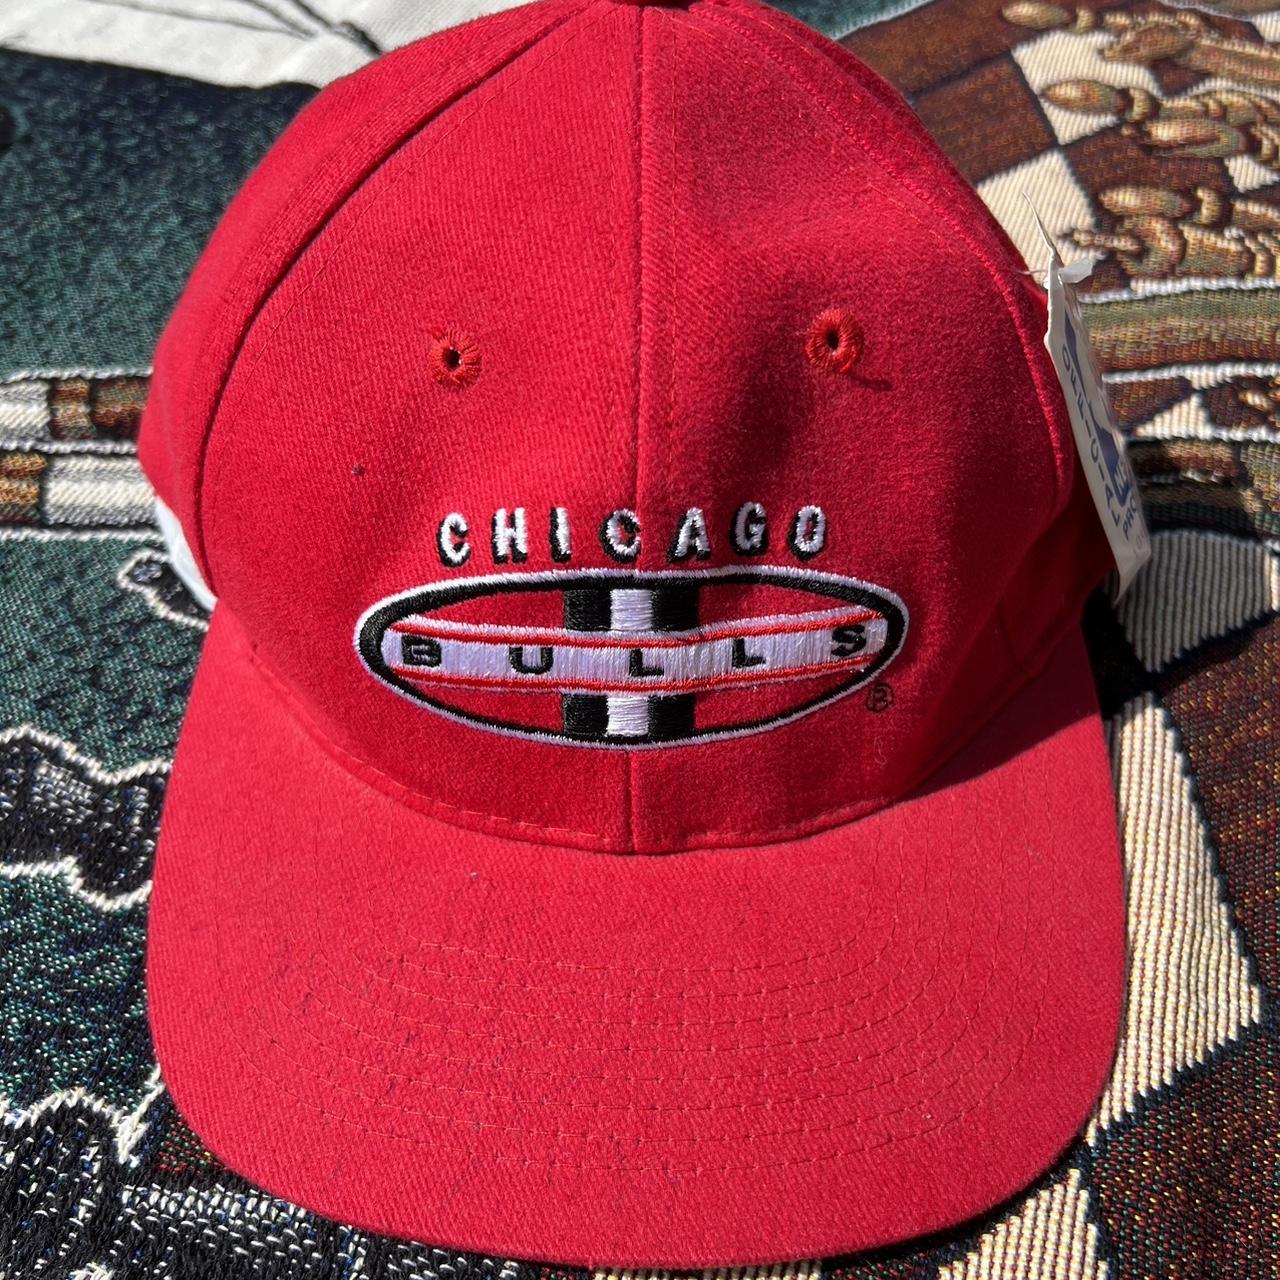 Sports Specialties Men's Hat - Red